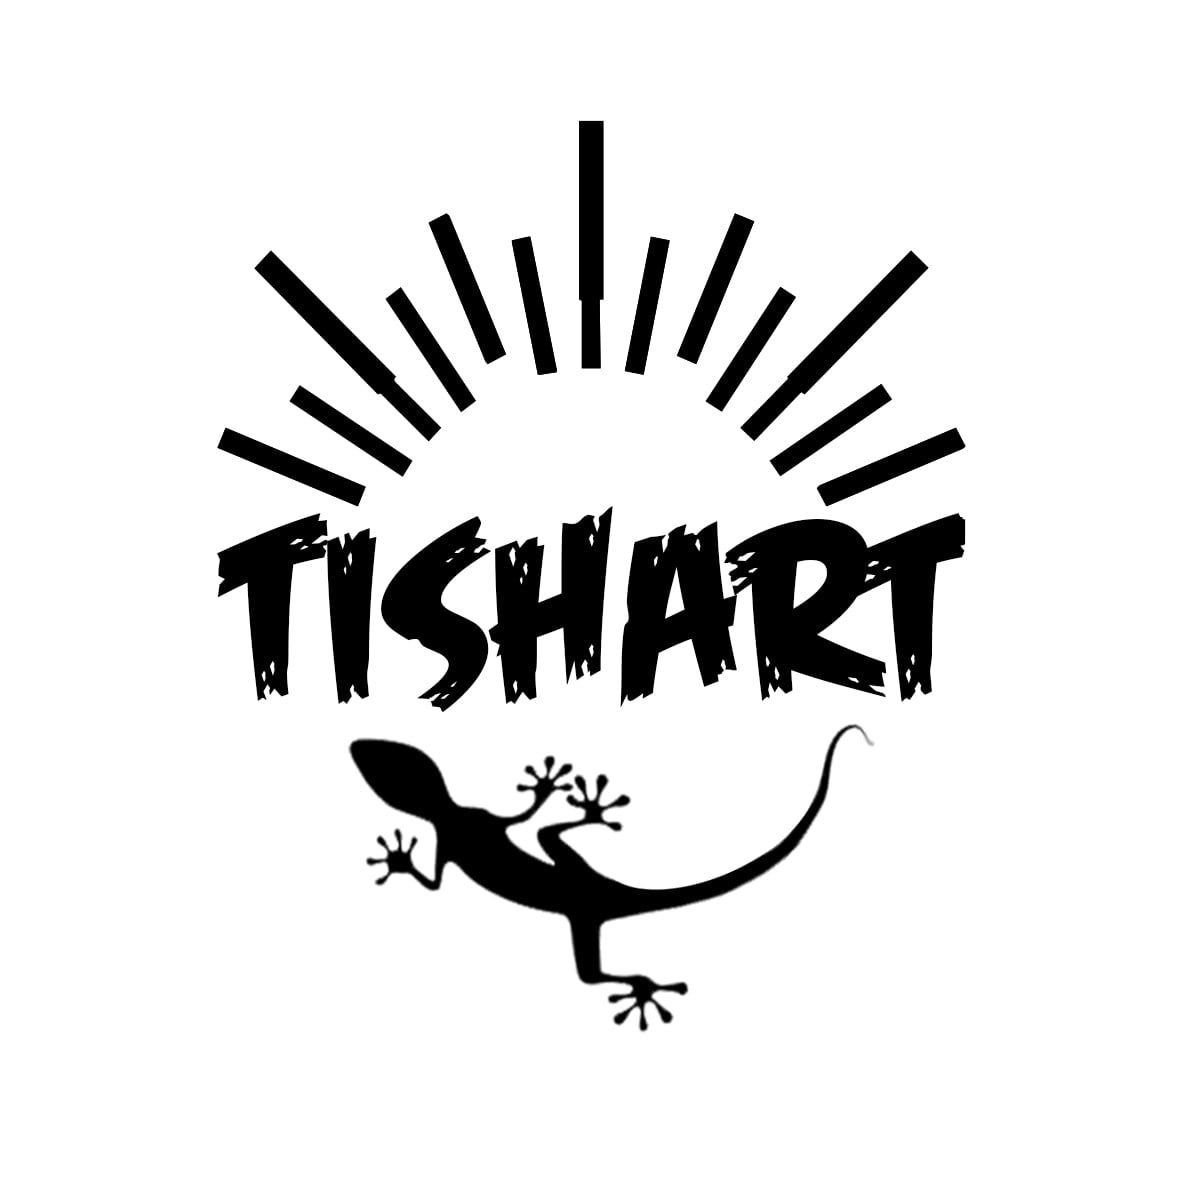 Tishart Mx